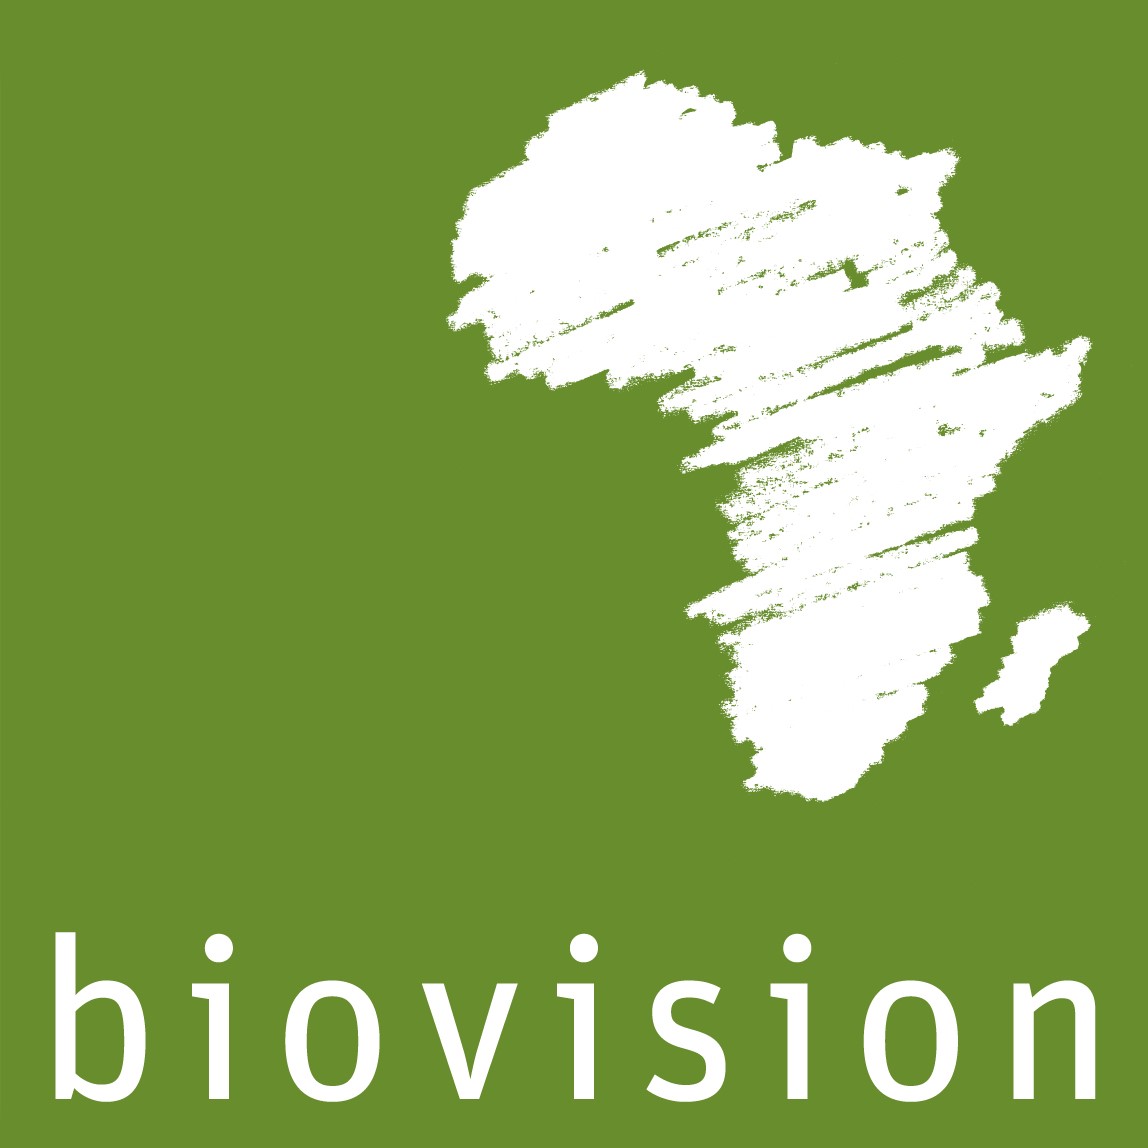 BioVision – Fondazione per uno sviluppo ecologico